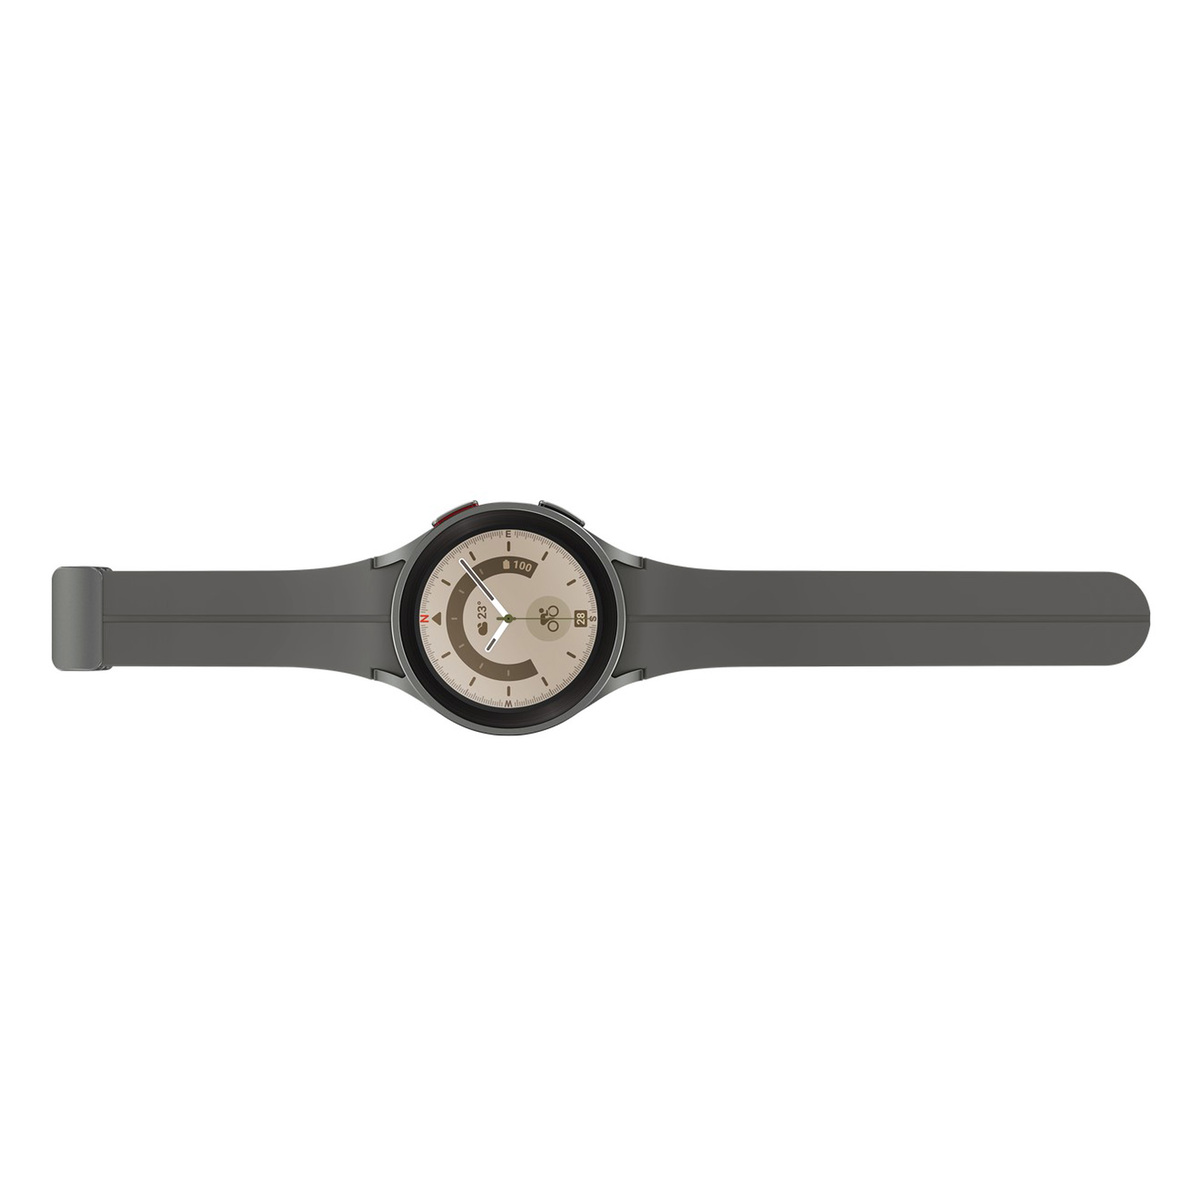 Samsung Galaxy Watch 5 Pro 45mm SM-R920NZTAMEA,Grey Titanium